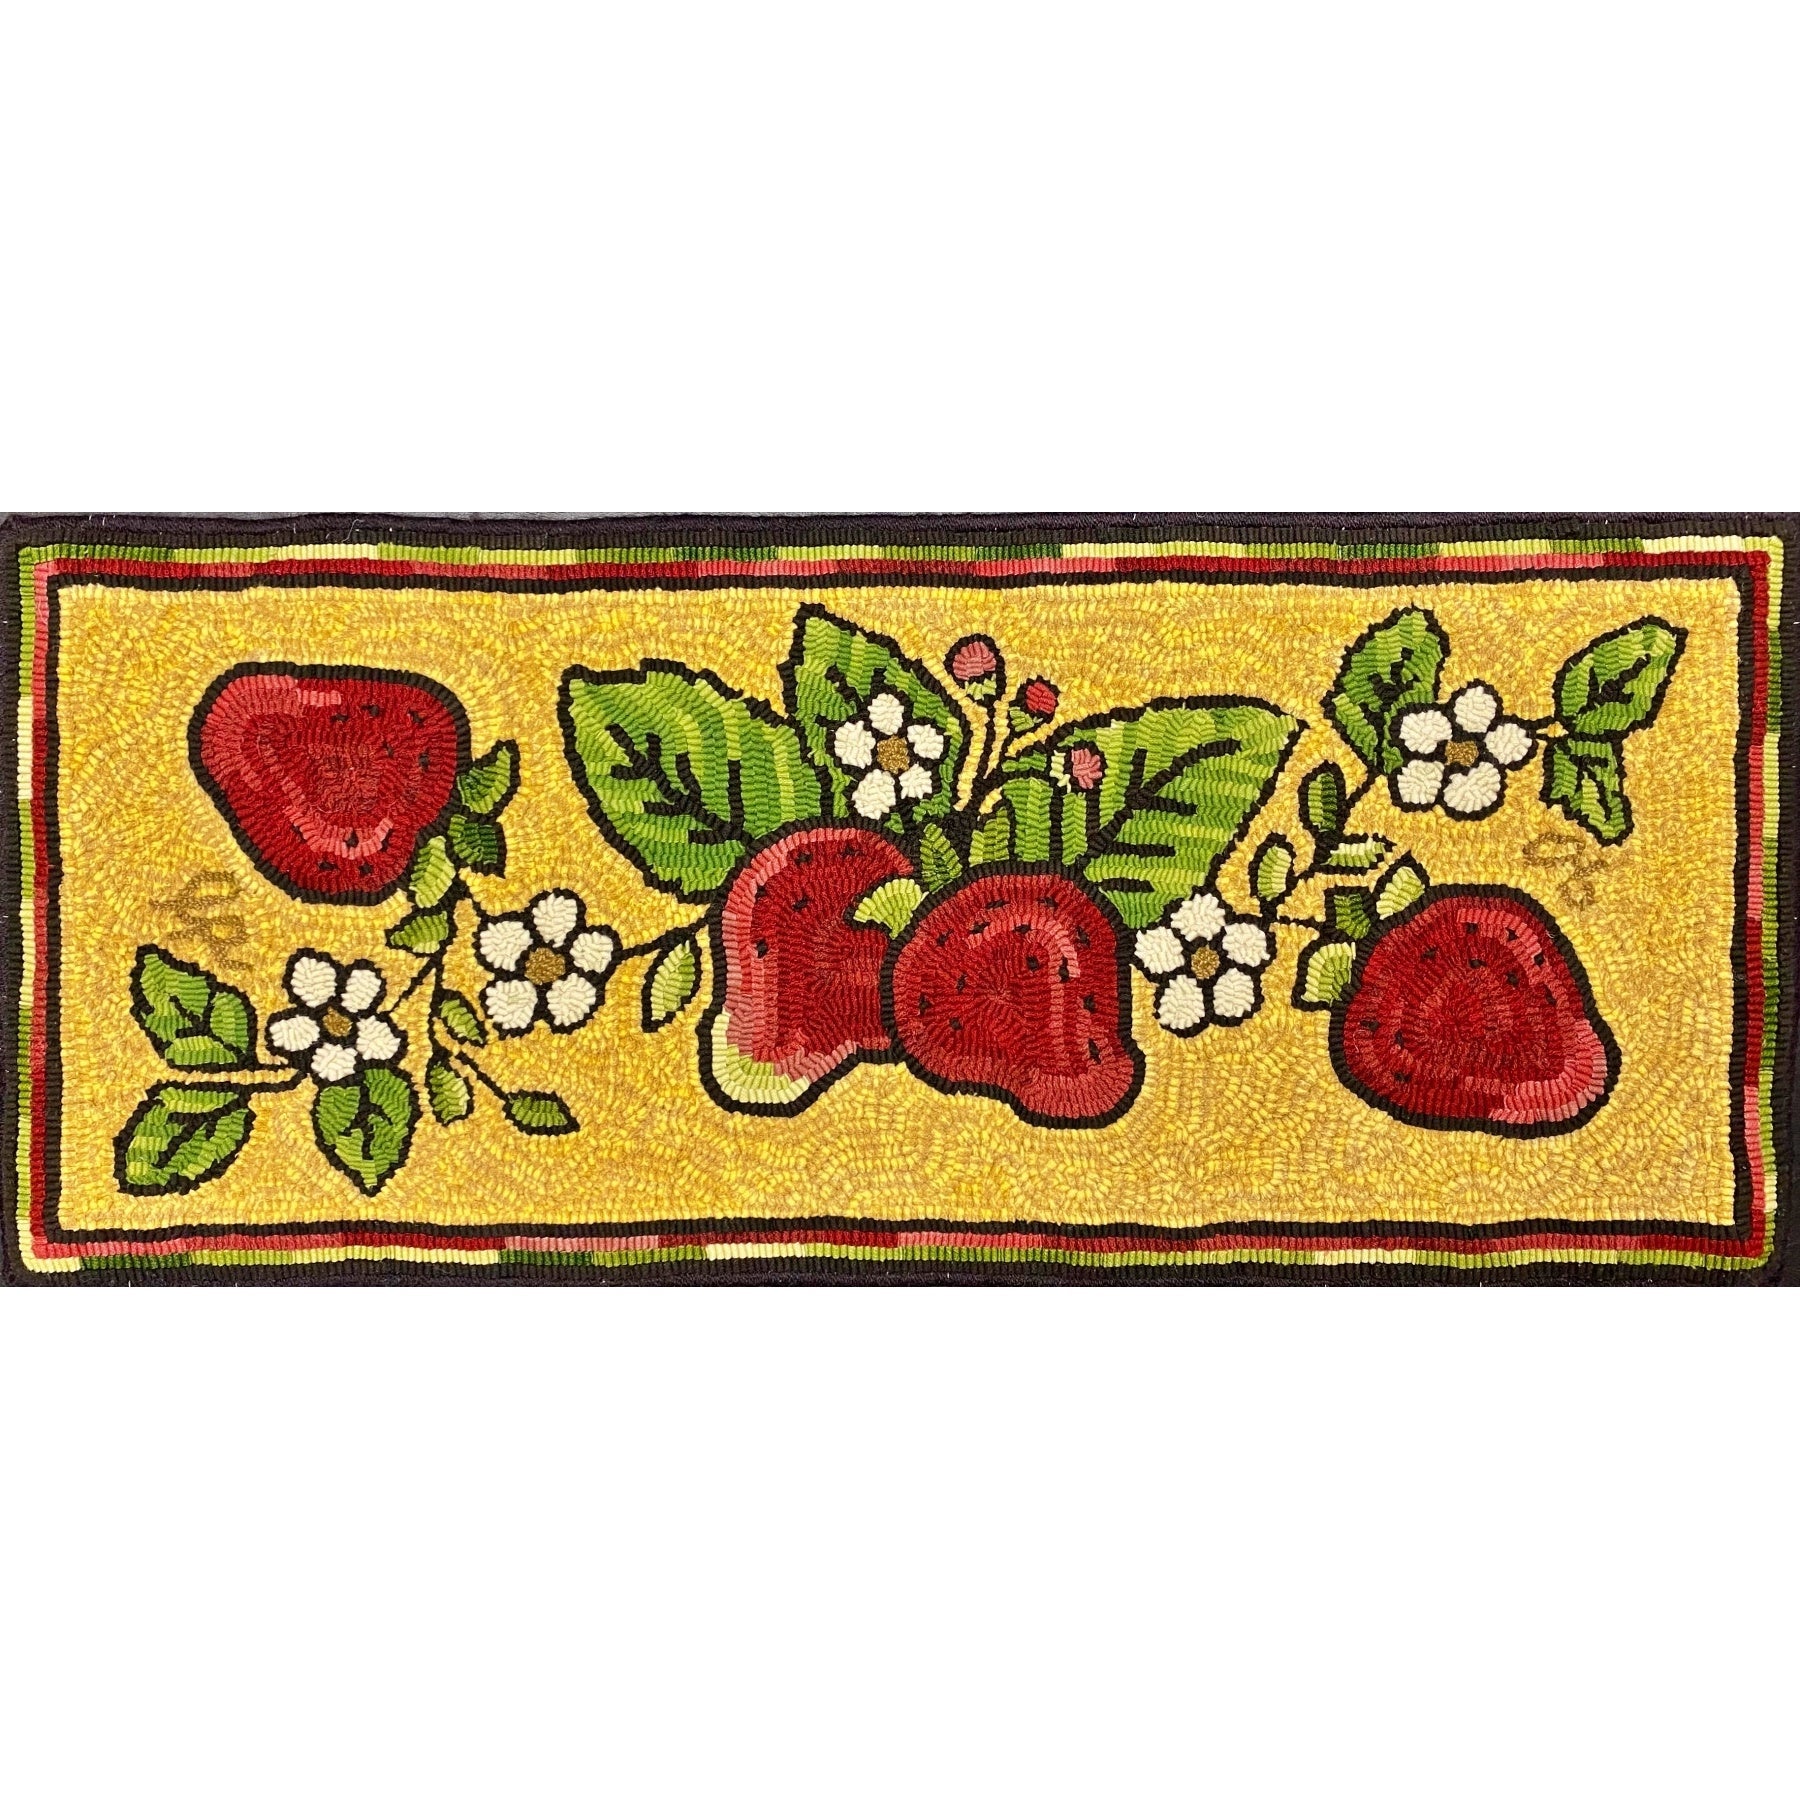 Grandma's Strawberries, rug hooked by Linda Powell